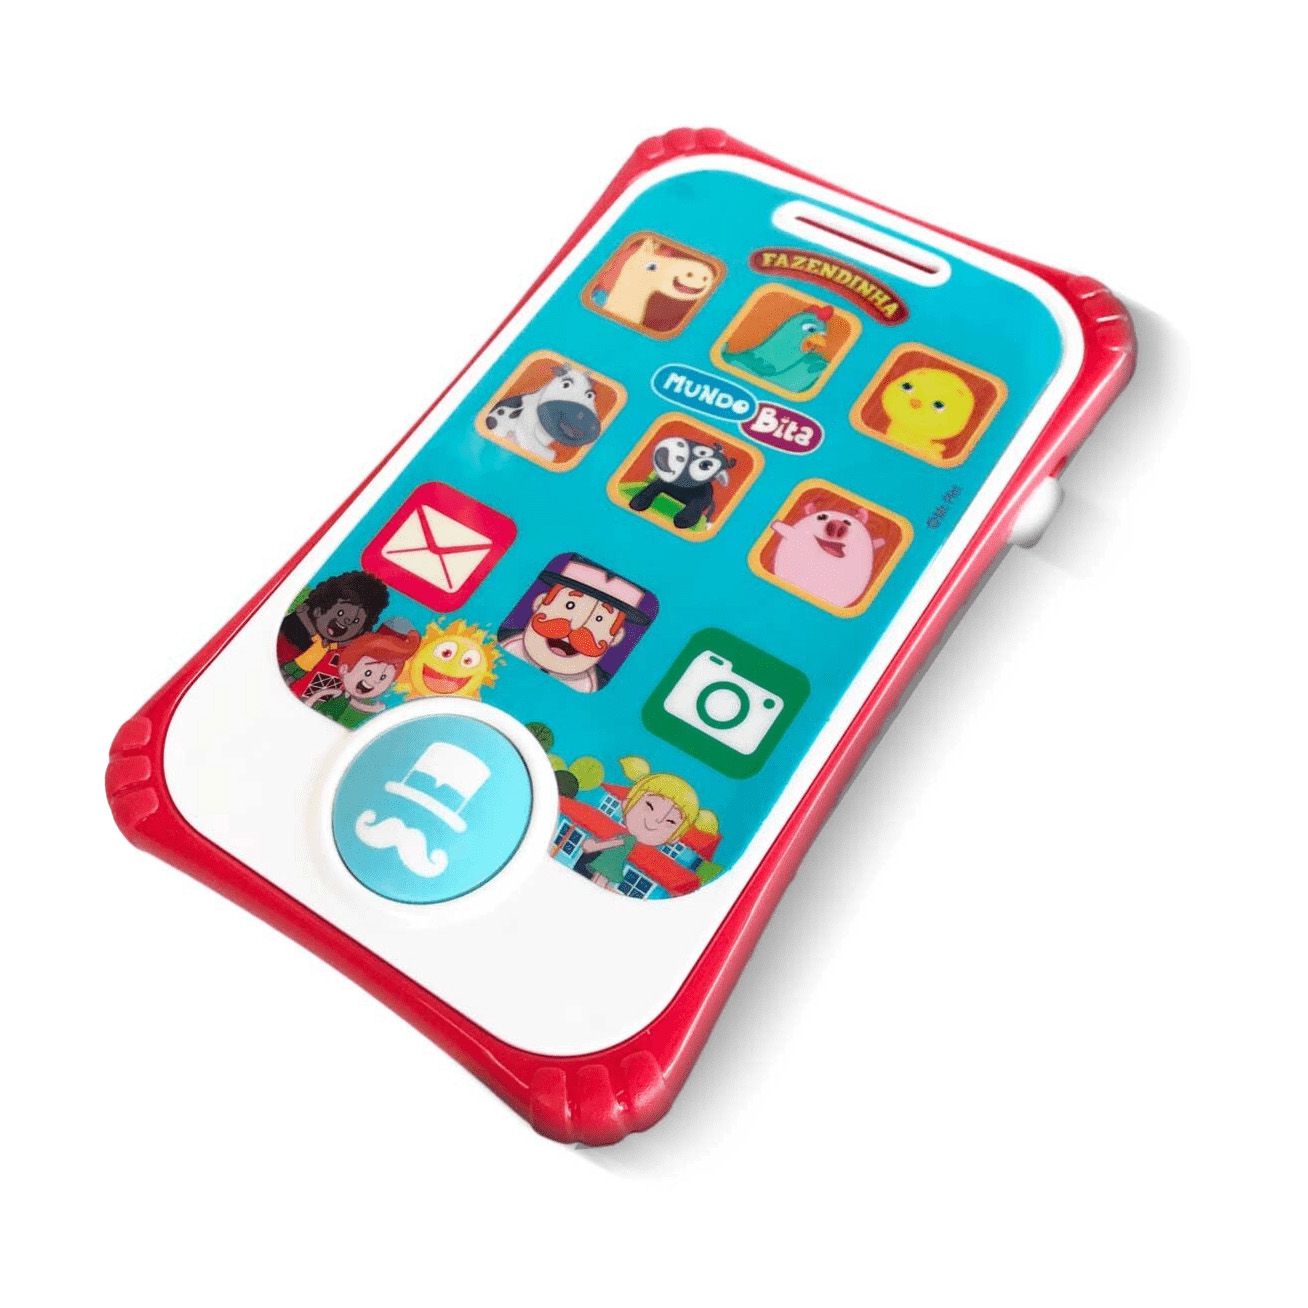 Smartphone Infantil - Fazendinha - Mundo Bita - Com Som - YesToys